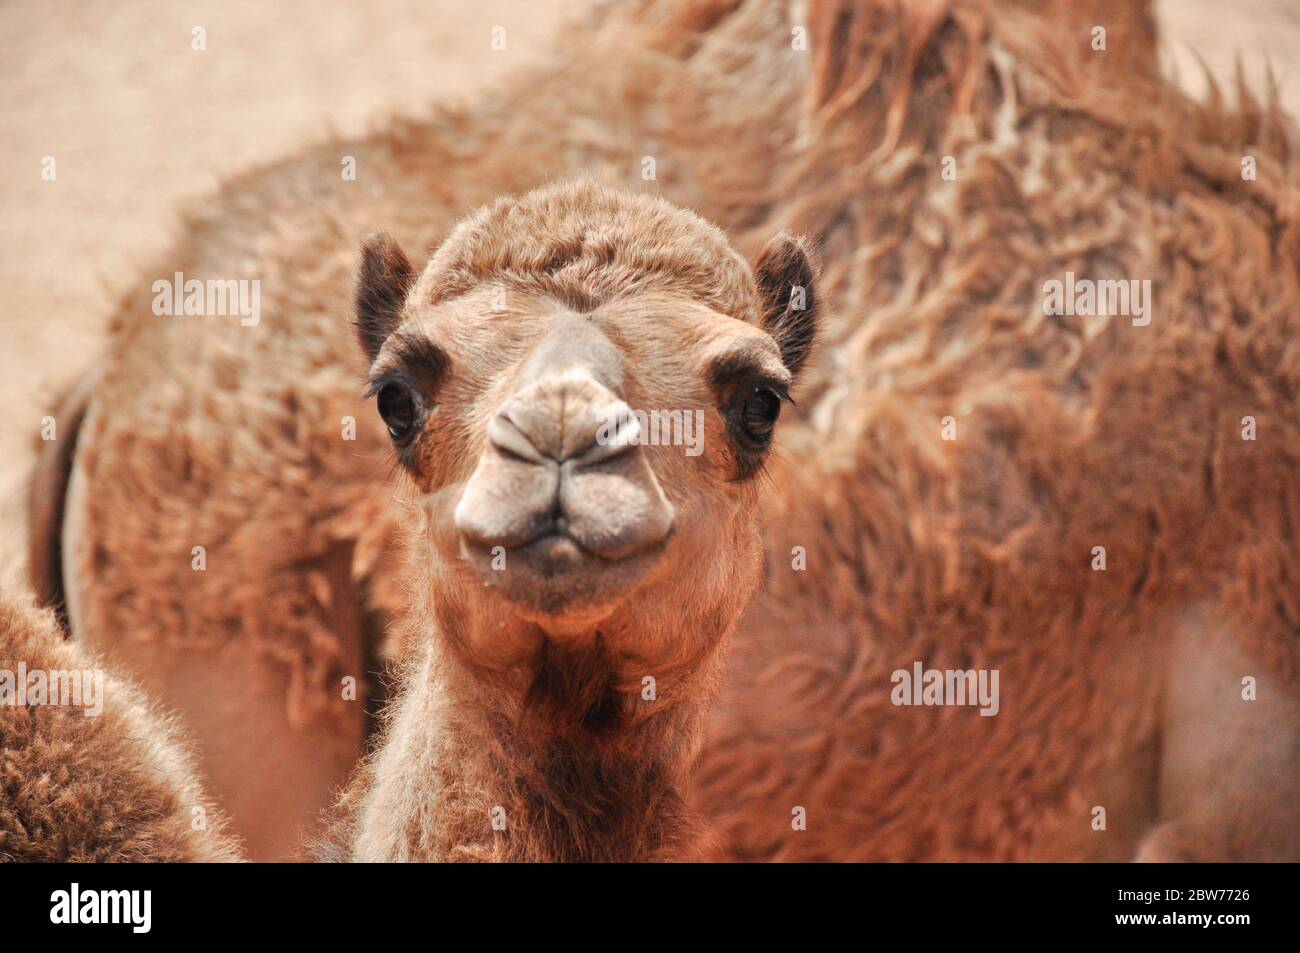 Le chameau africain (gros plan - chameau regardant directement dans la caméra), Fuerteventura, Espagne Banque D'Images